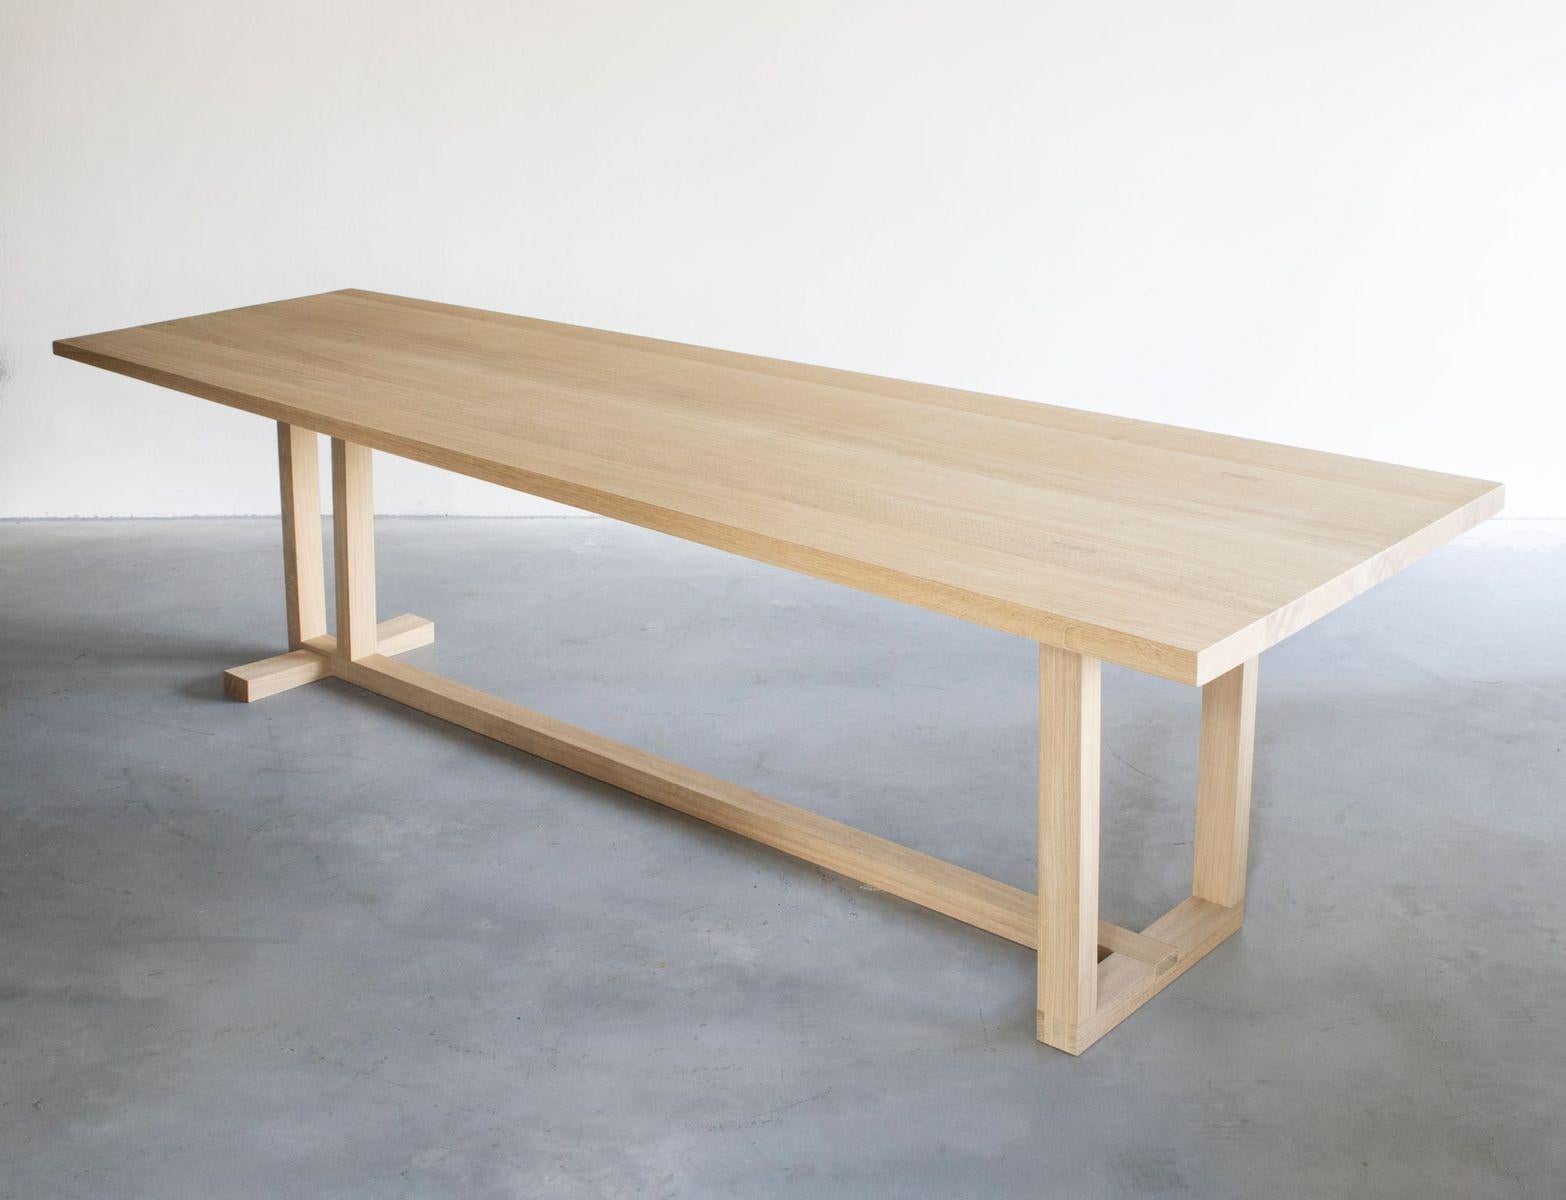 Table de salle à manger Wedge de Van Rossum
Dimensions : D280 x L100 x H75 cm
Matériaux : Chêne.

Le bois est disponible dans toutes les couleurs standard de Van Rossum, ou dans une finition assortie à l'échantillon du client. 

